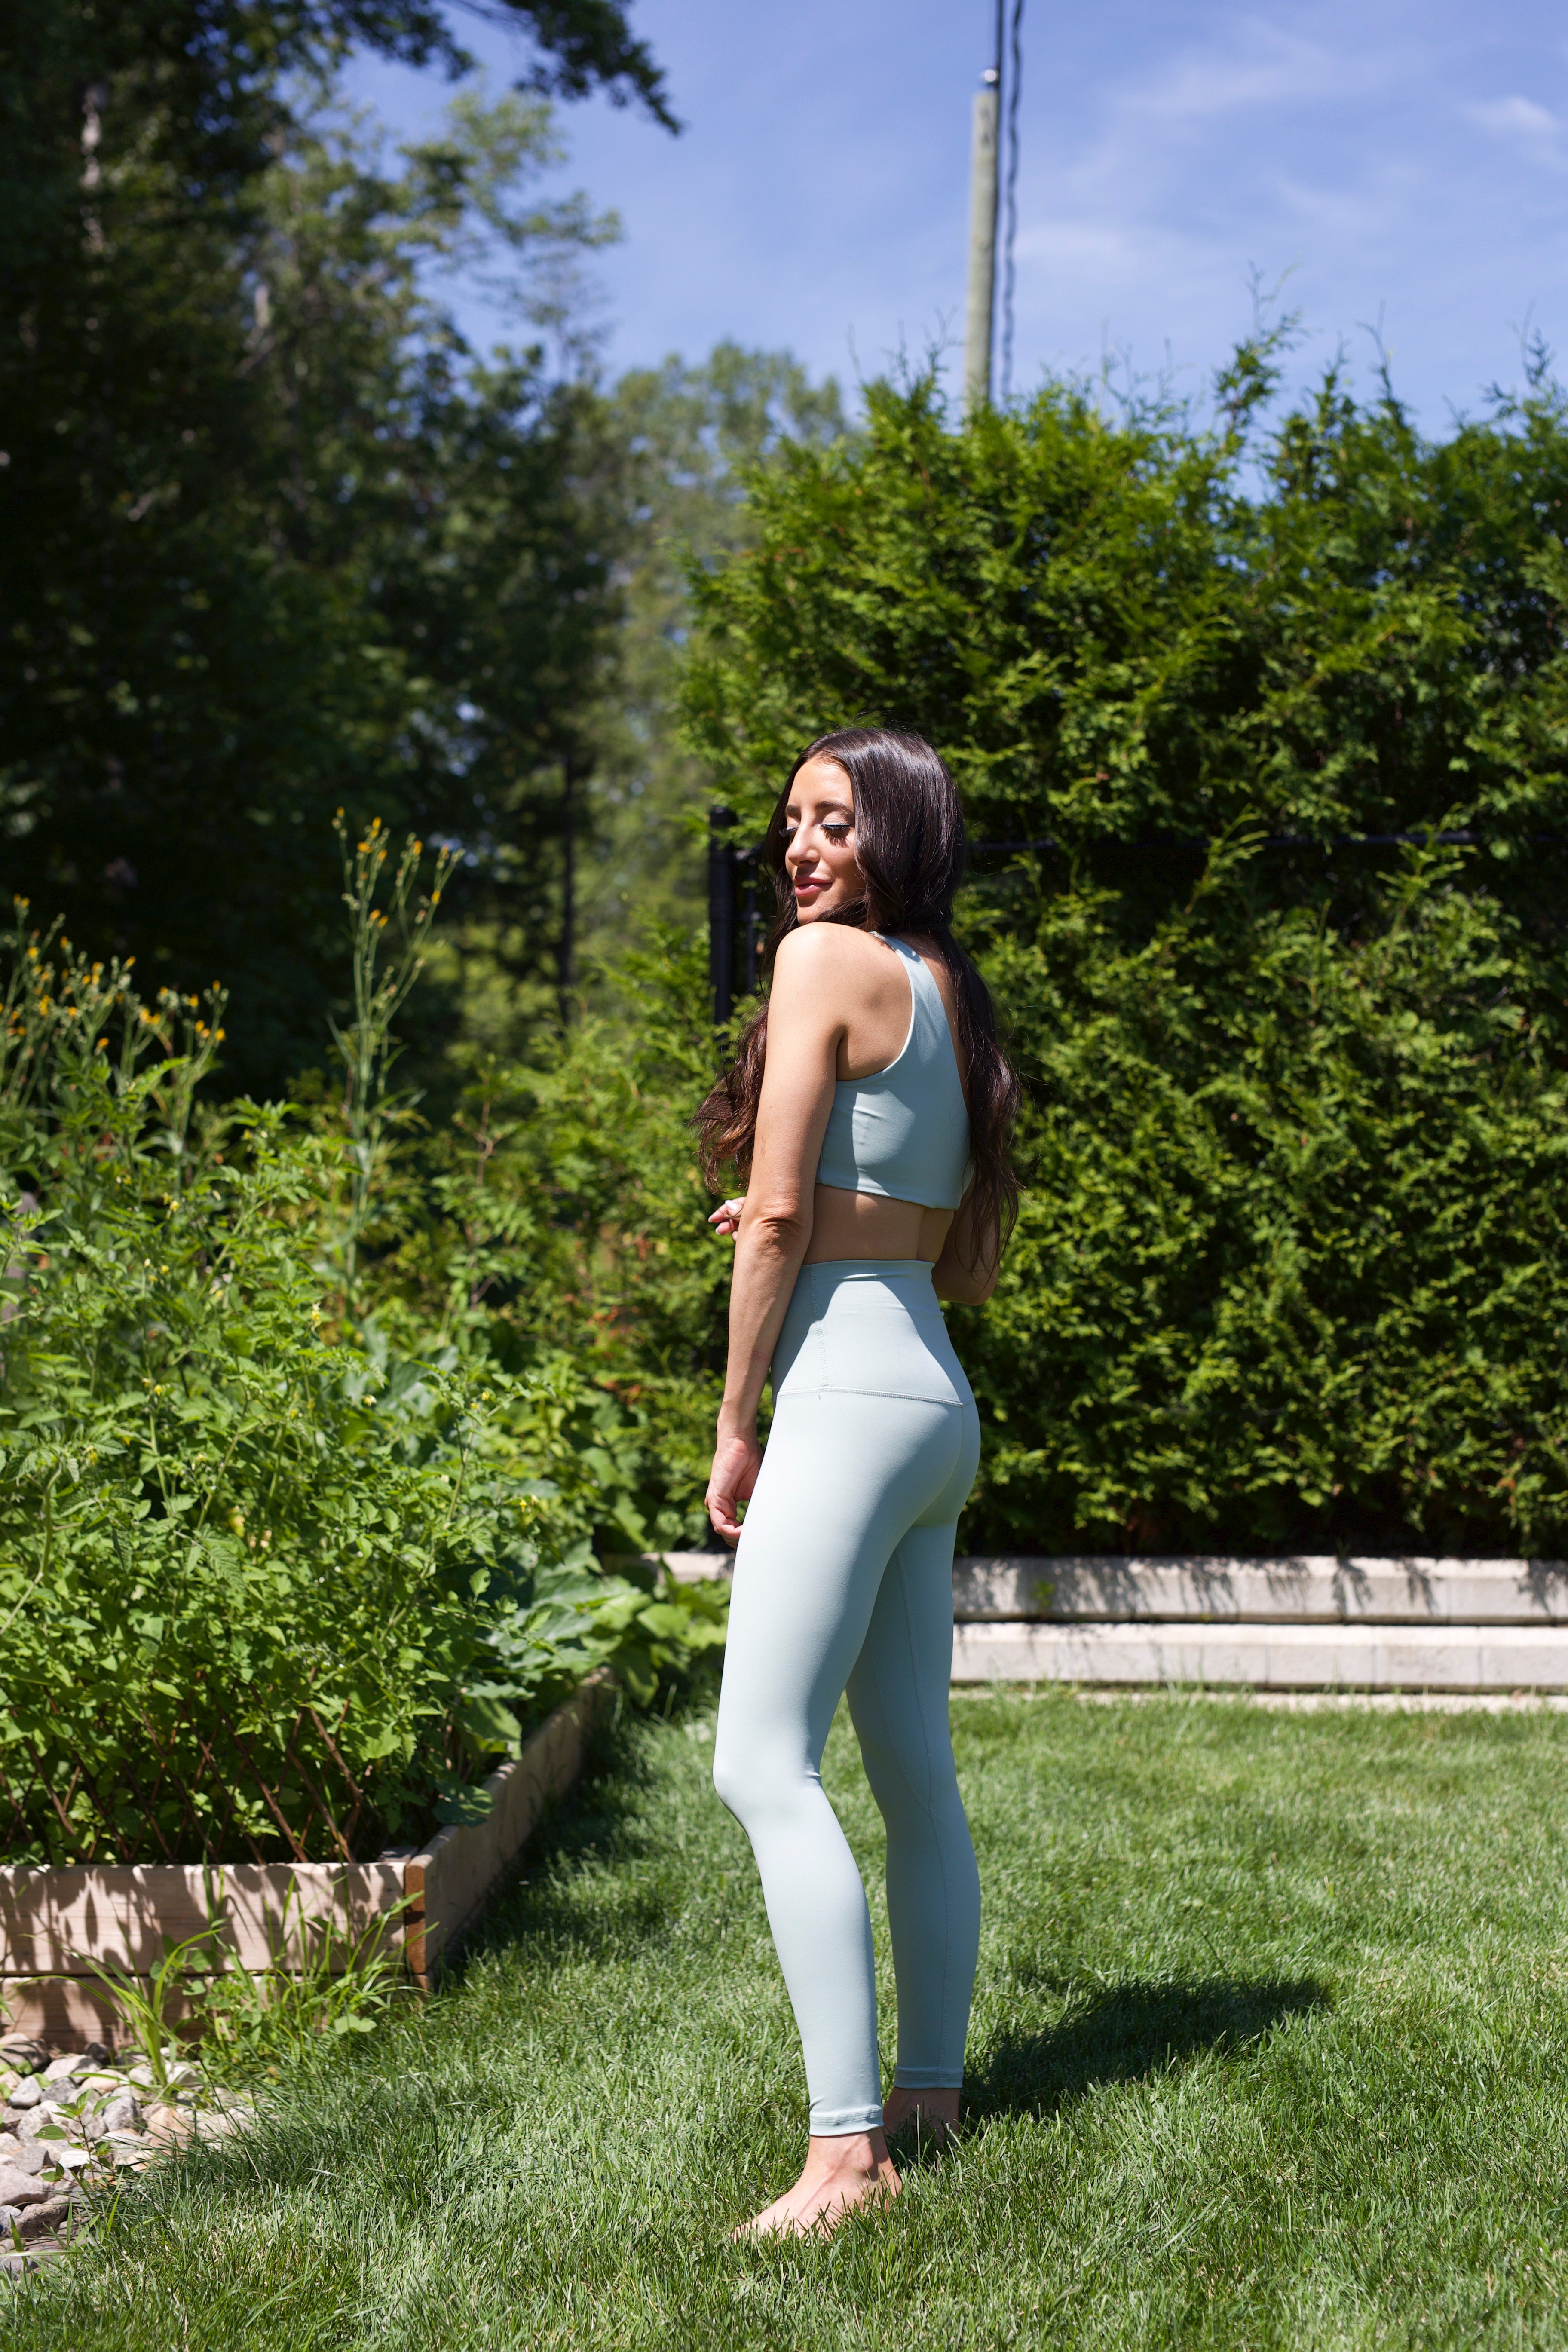 Buy Fabluk? Women's Nylon-Spandex Blend Ultra-Comfort Seamless